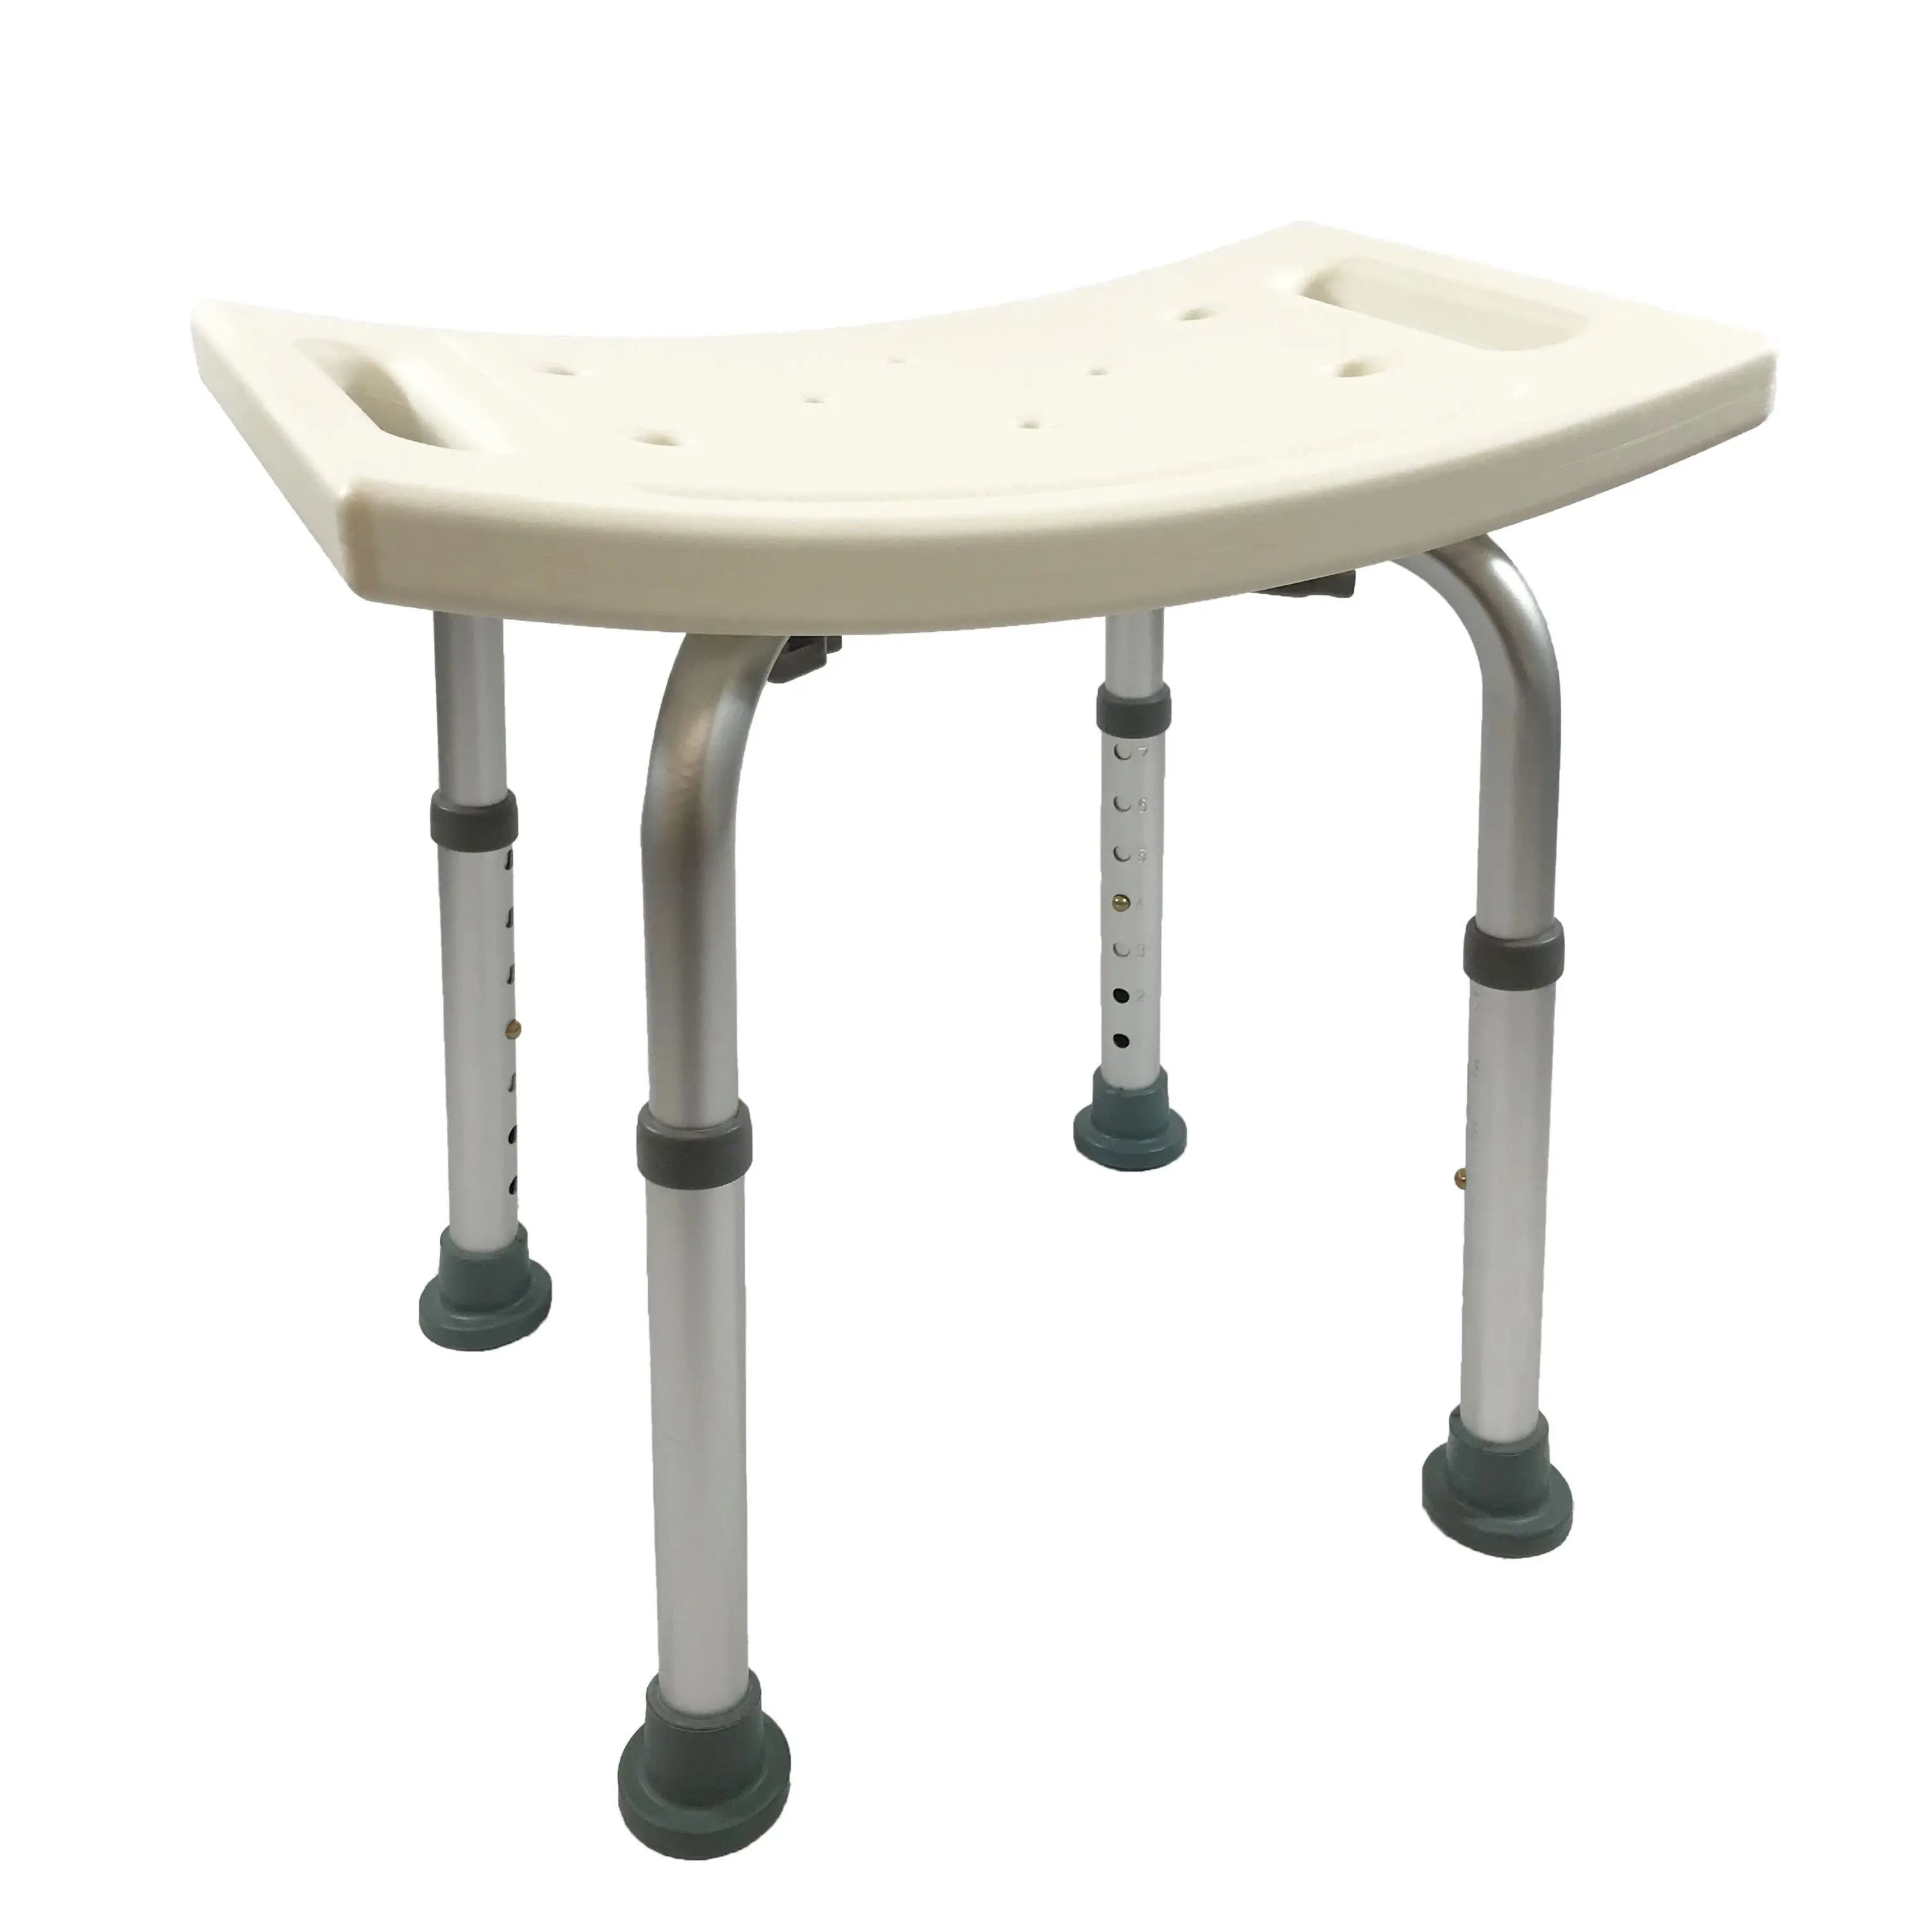 ヘルスケア用品調節可能なシャワーチェア入浴チェアバスベンチ障害者高齢者のための支援装置